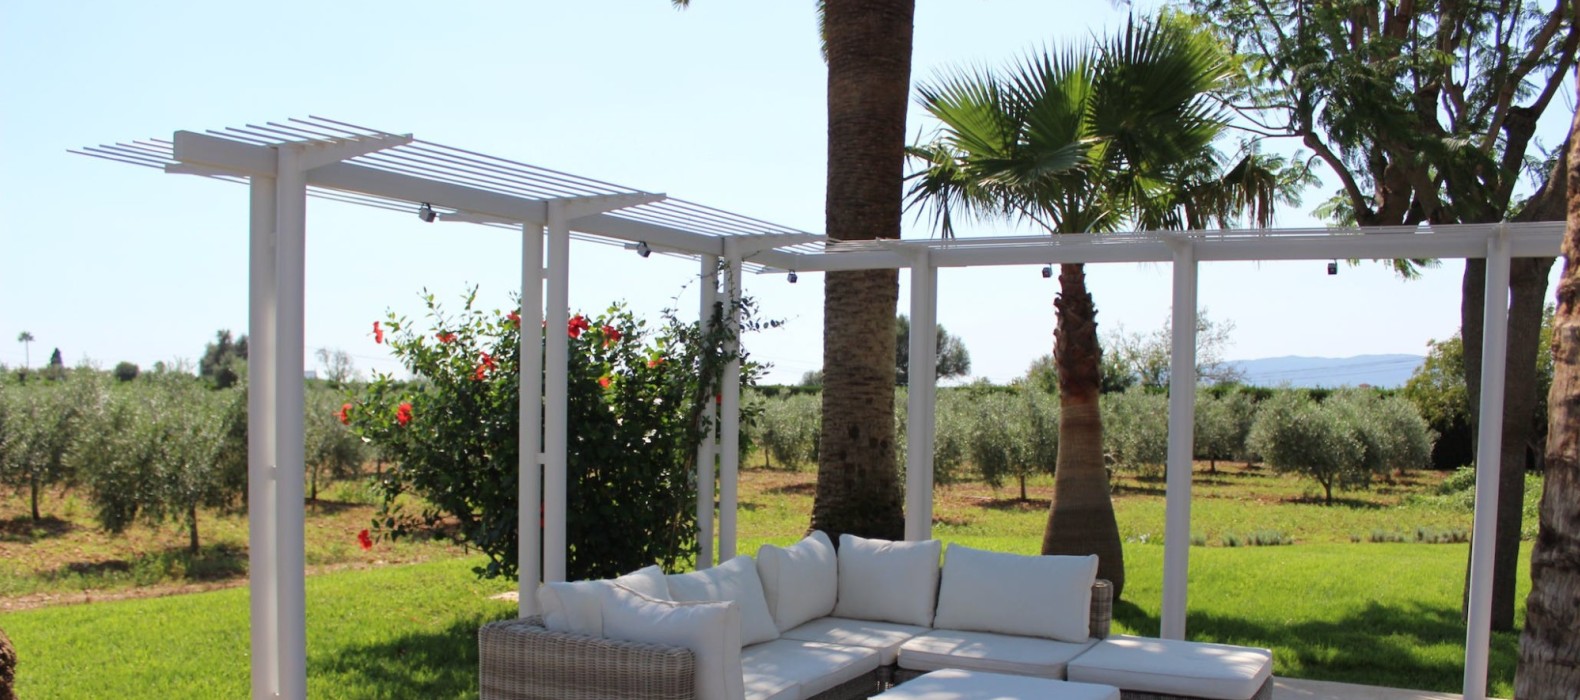 Outdoor chill area sofas Villa Can Euphoria Mallorca.